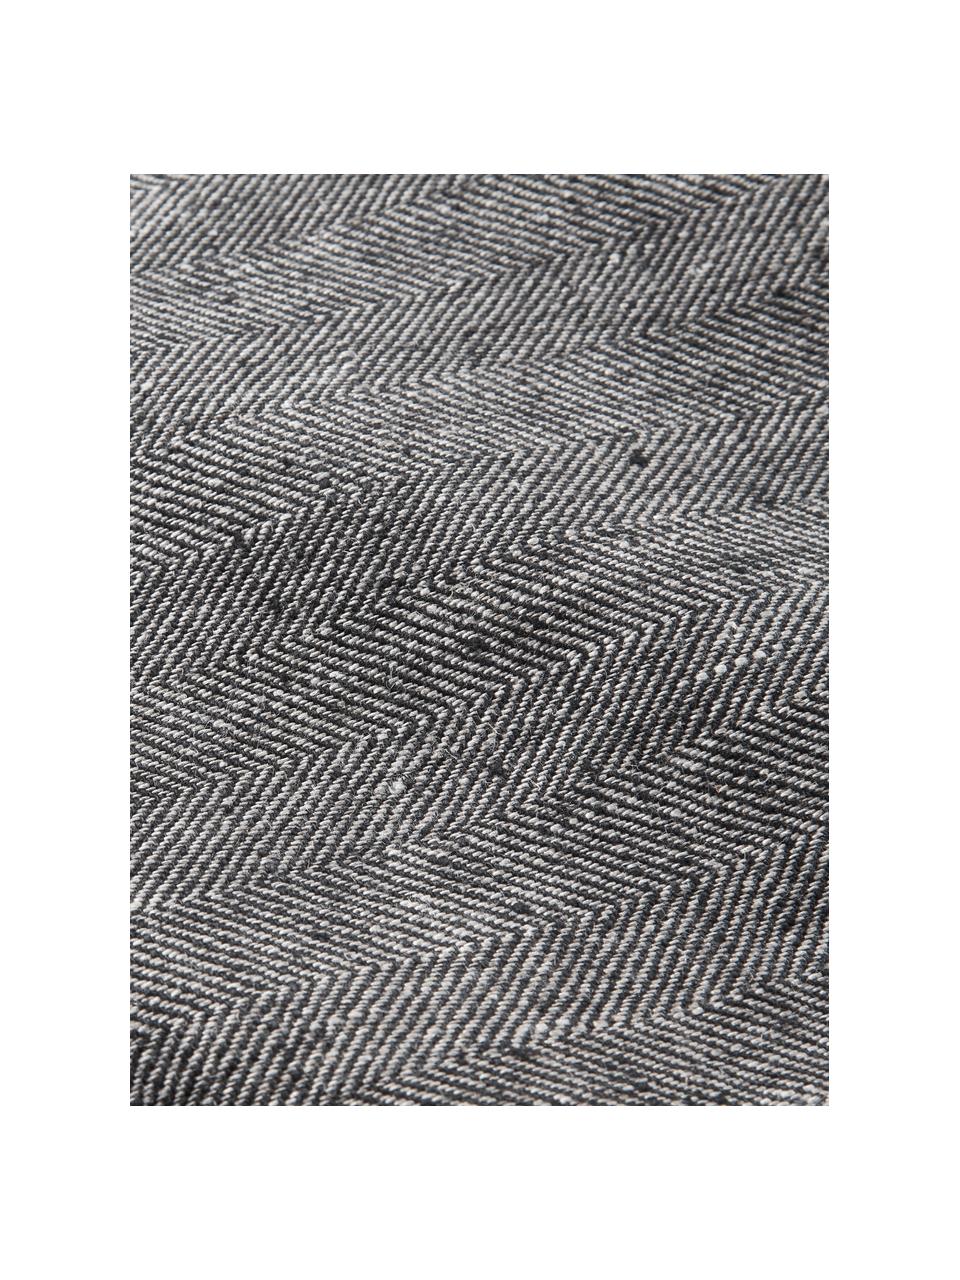 Leinen-Tischläufer Audra mit Fischgrätmuster, 100 % Leinen, Dunkelgrau, B 46 x L 147 cm